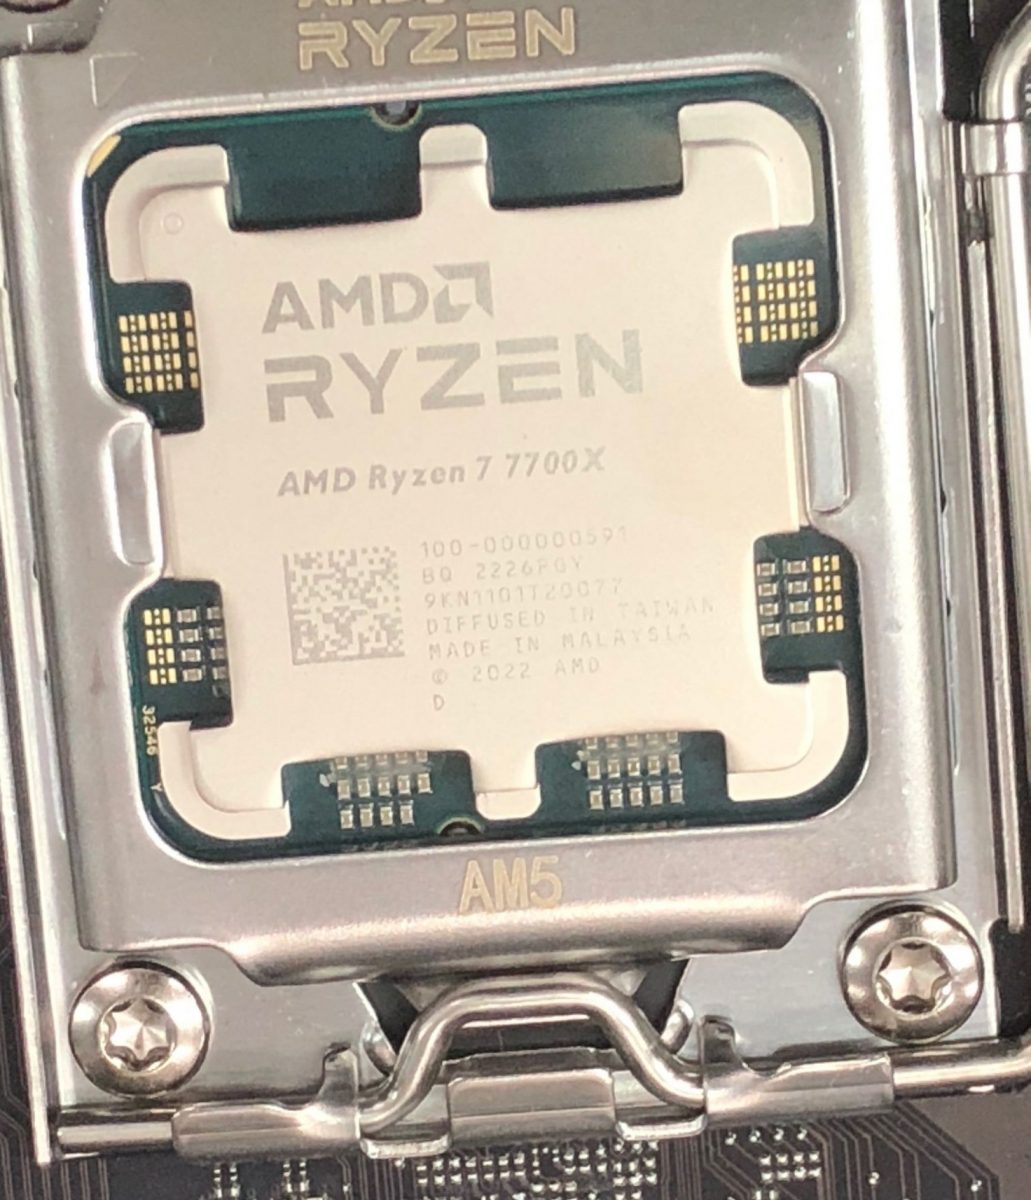 AMD Ryzen 7 7700X vs Intel Core i7-6700K vs AMD Ryzen 9 7900